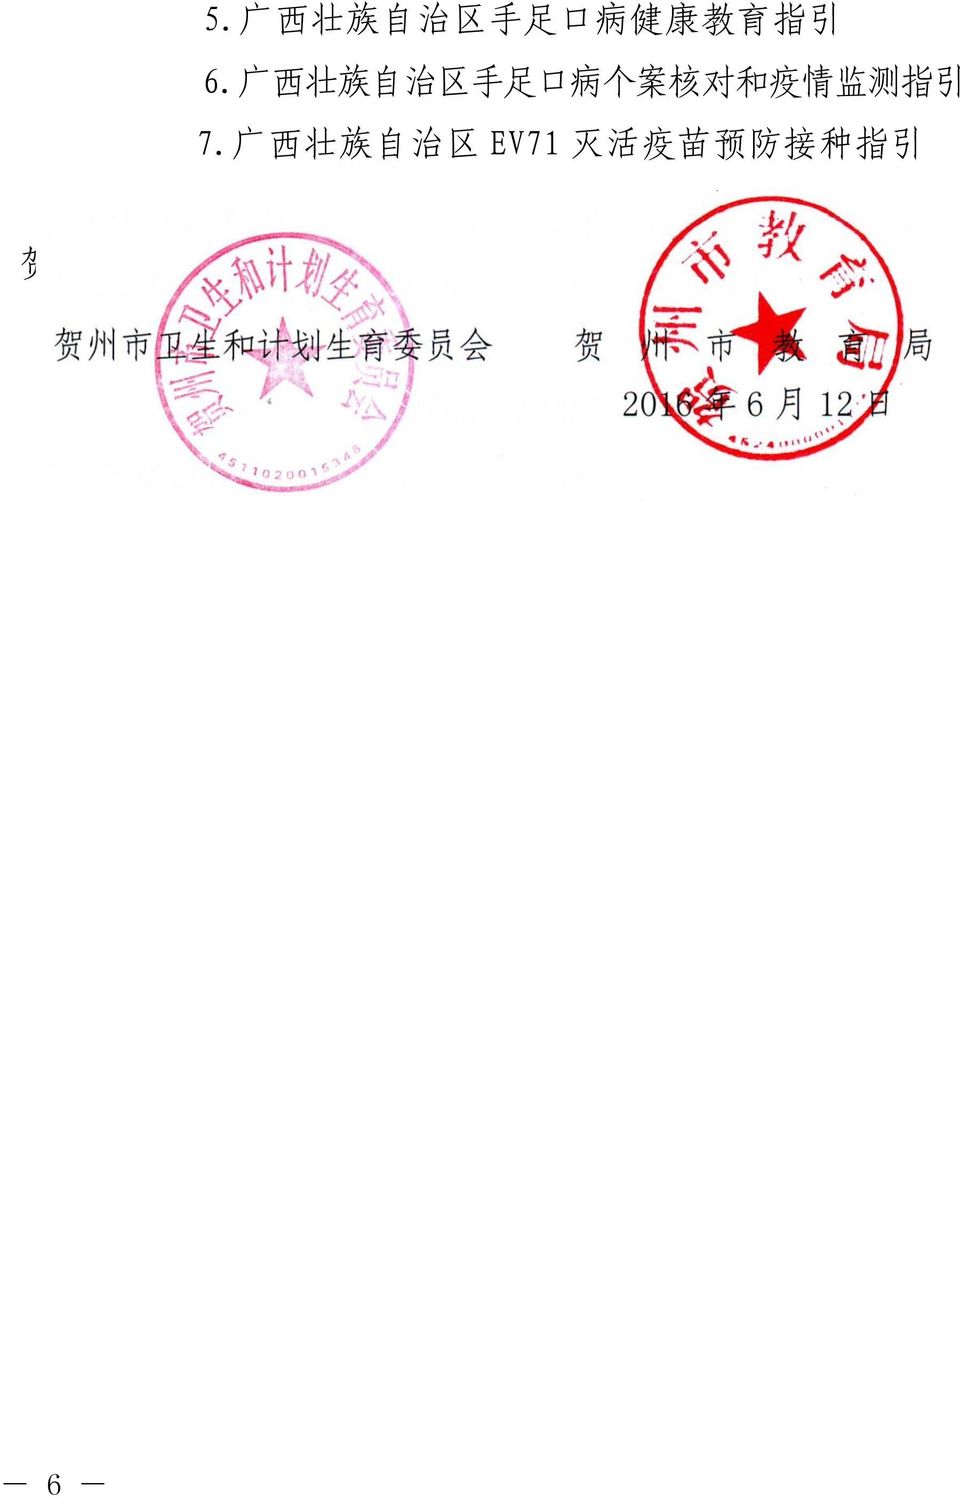 广 西 壮 族 自 治 区 EV71 灭 活 疫 苗 预 防 接 种 指 引 贺 州 市 卫